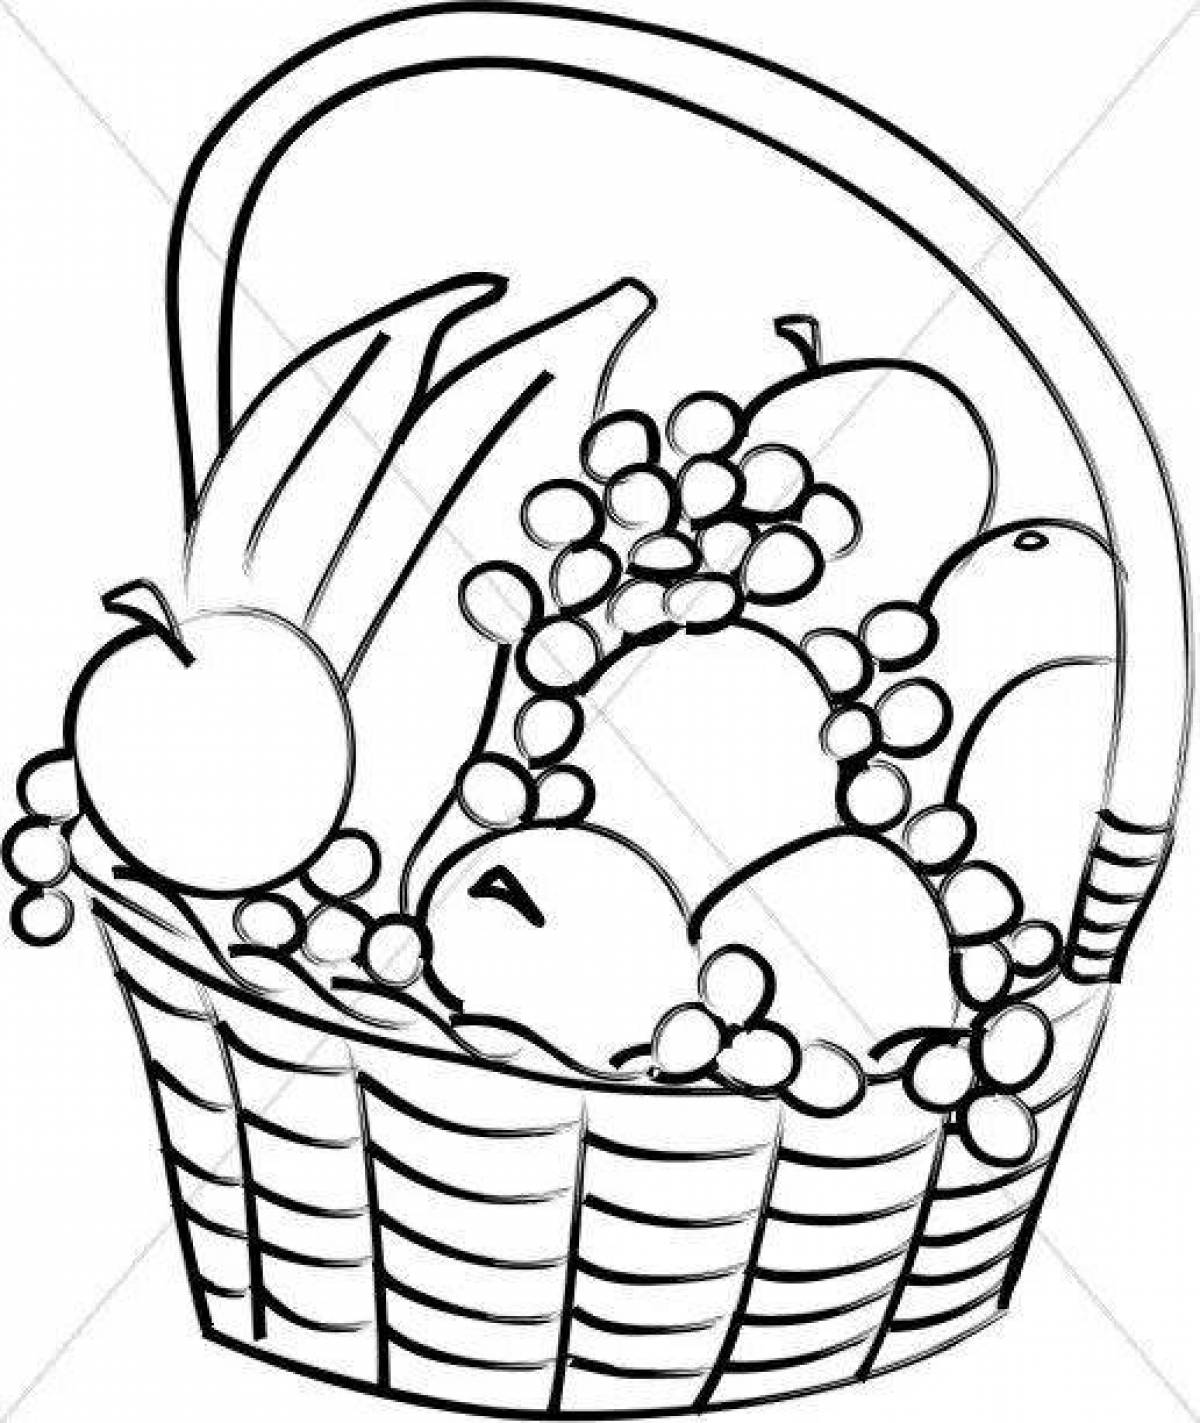 Coloring page delicious food basket